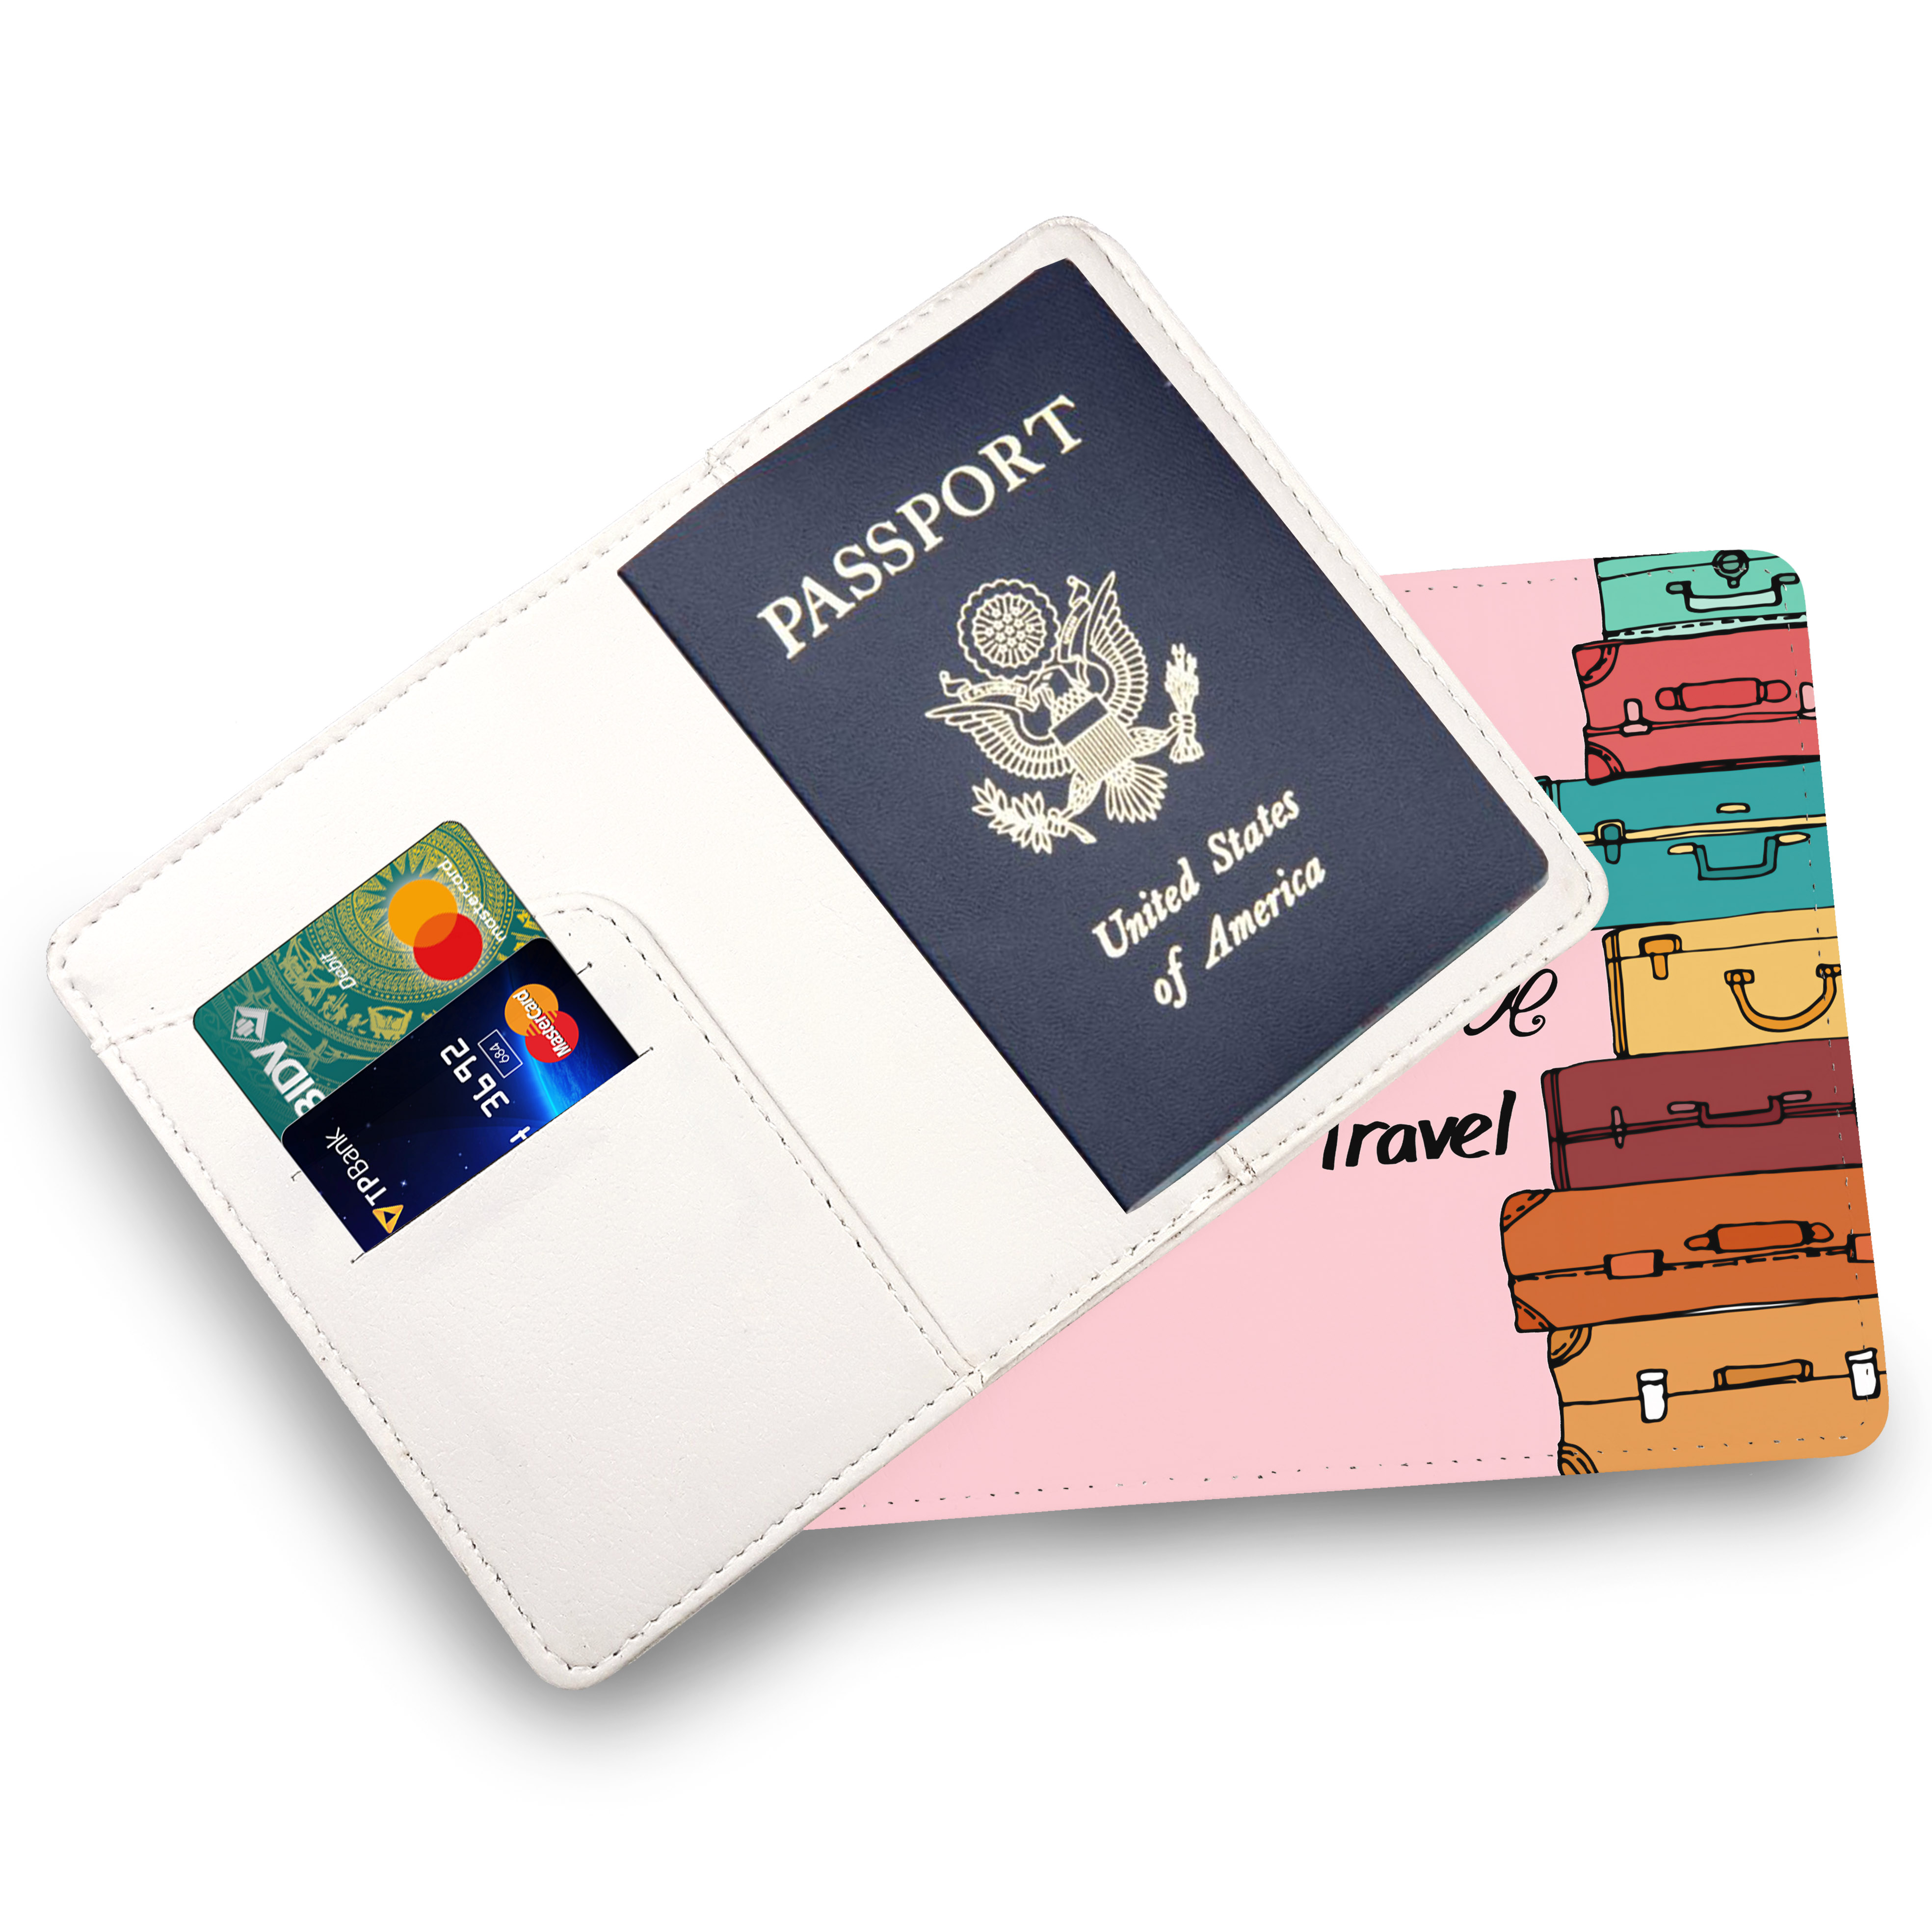 Bao Da Passport Du Lịch I LOVE TRAVEL - Ví Đựng Hộ Chiếu STormbreaker VALI Cute - Thiết Kế Đơn Giản Trẻ Trung Vintage - Hình Ảnh Sắc Nét - Passport Cover Holder - LT085